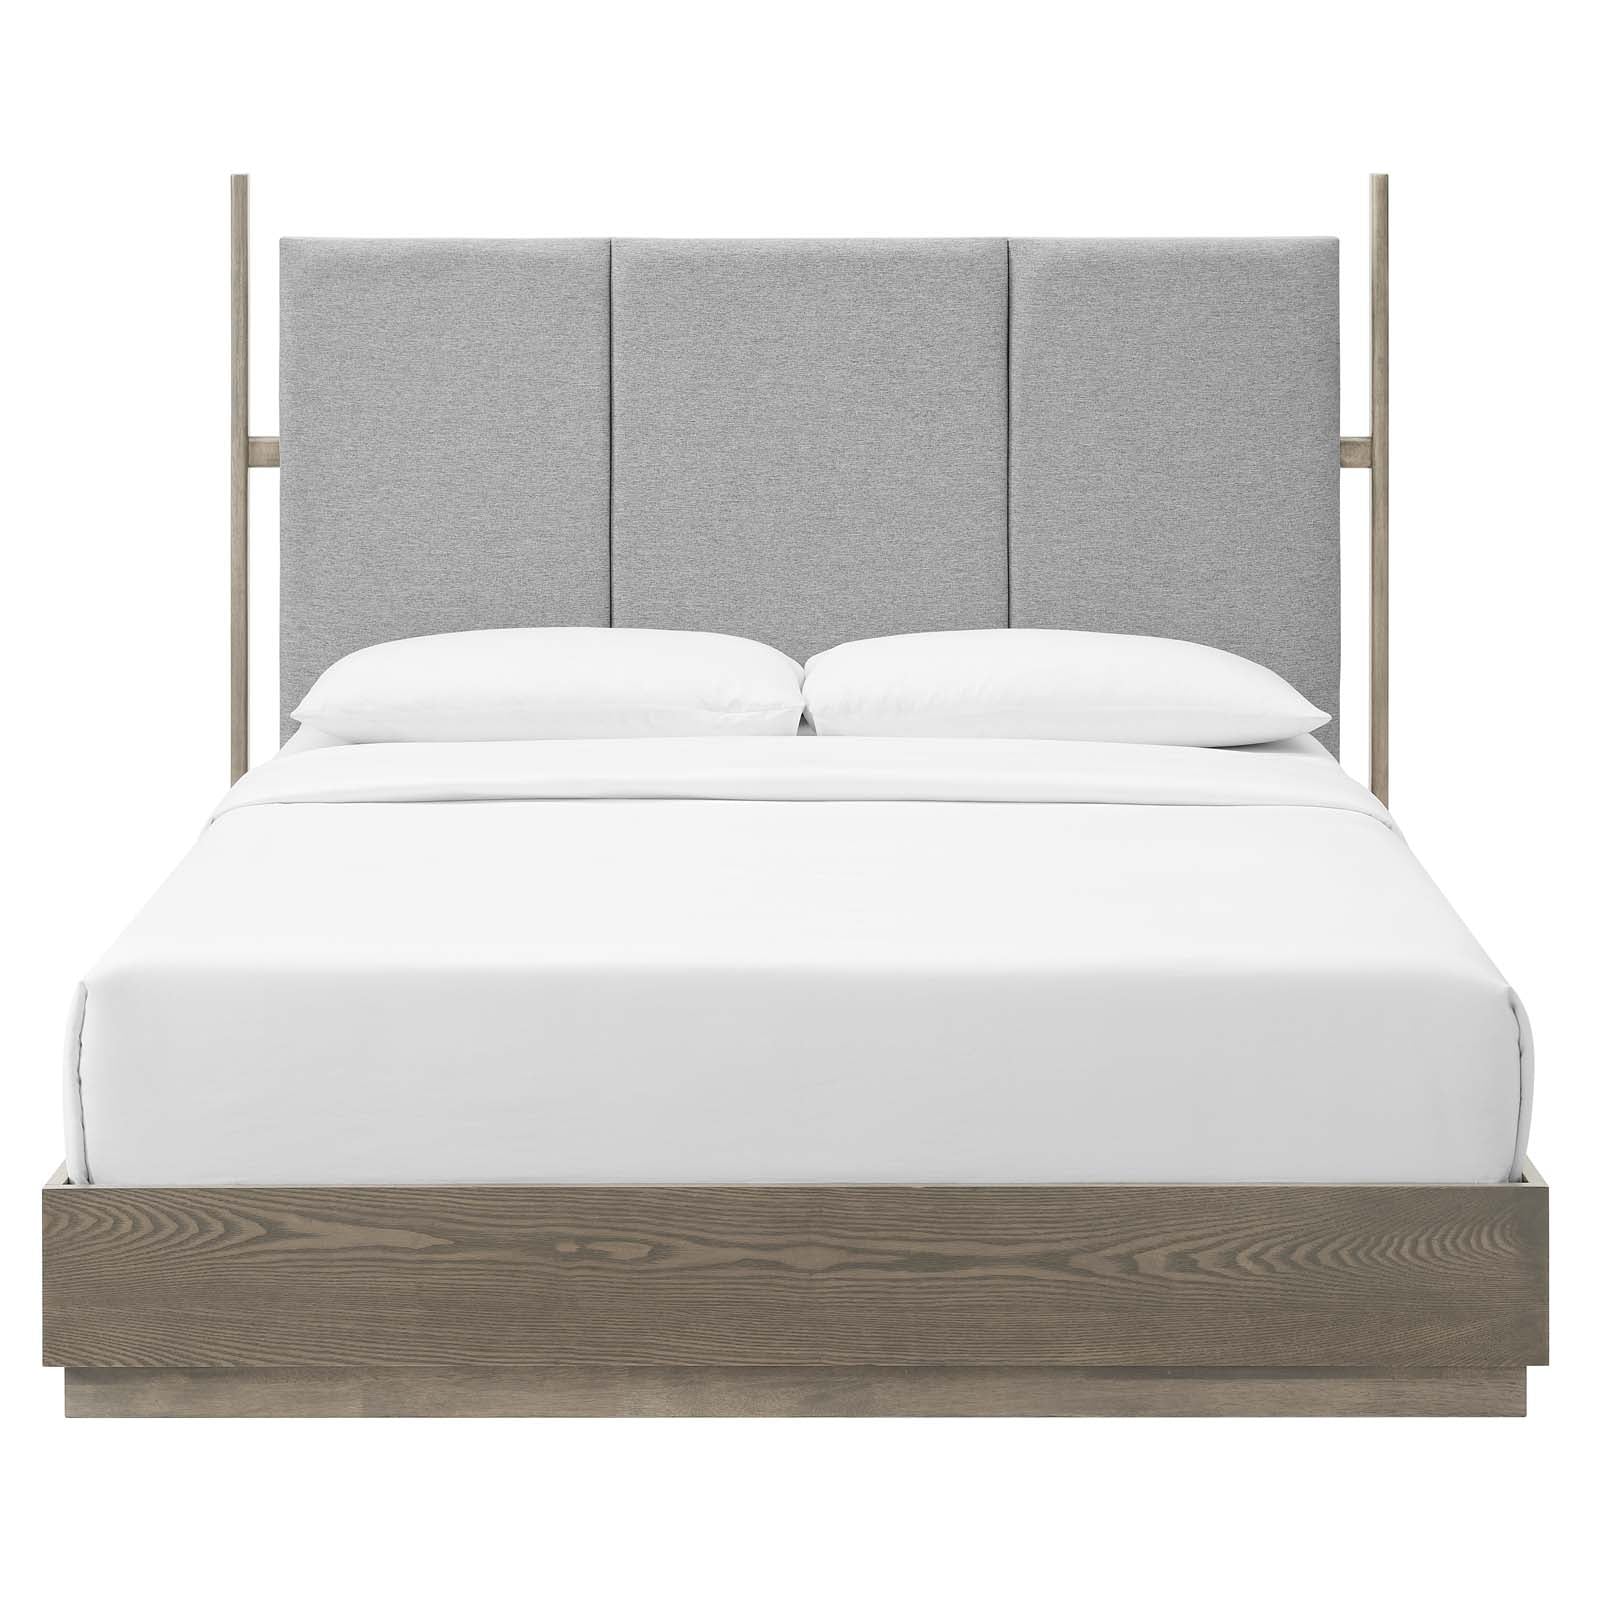 Modway Beds - Merritt Upholstered Queen Platform Bed Oak Light Gray